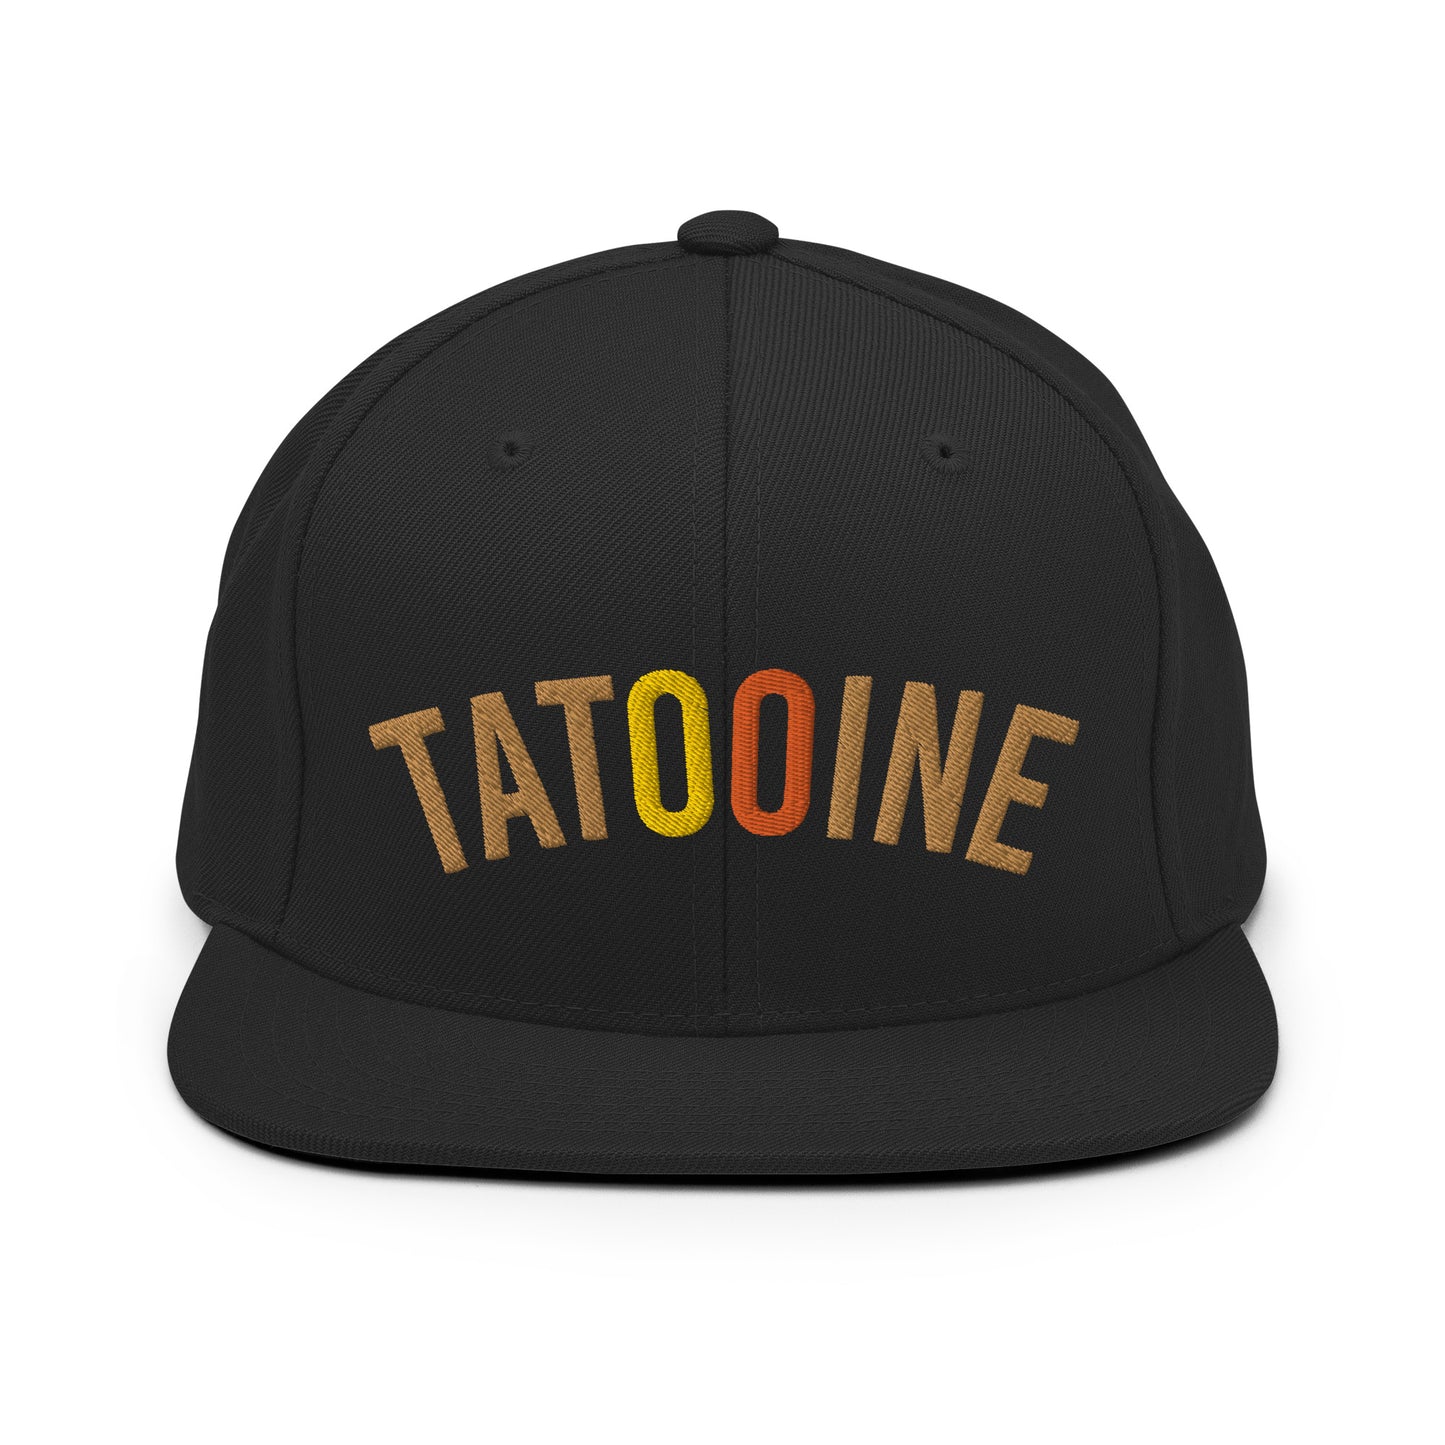 Tatooine Home Team snapback hat